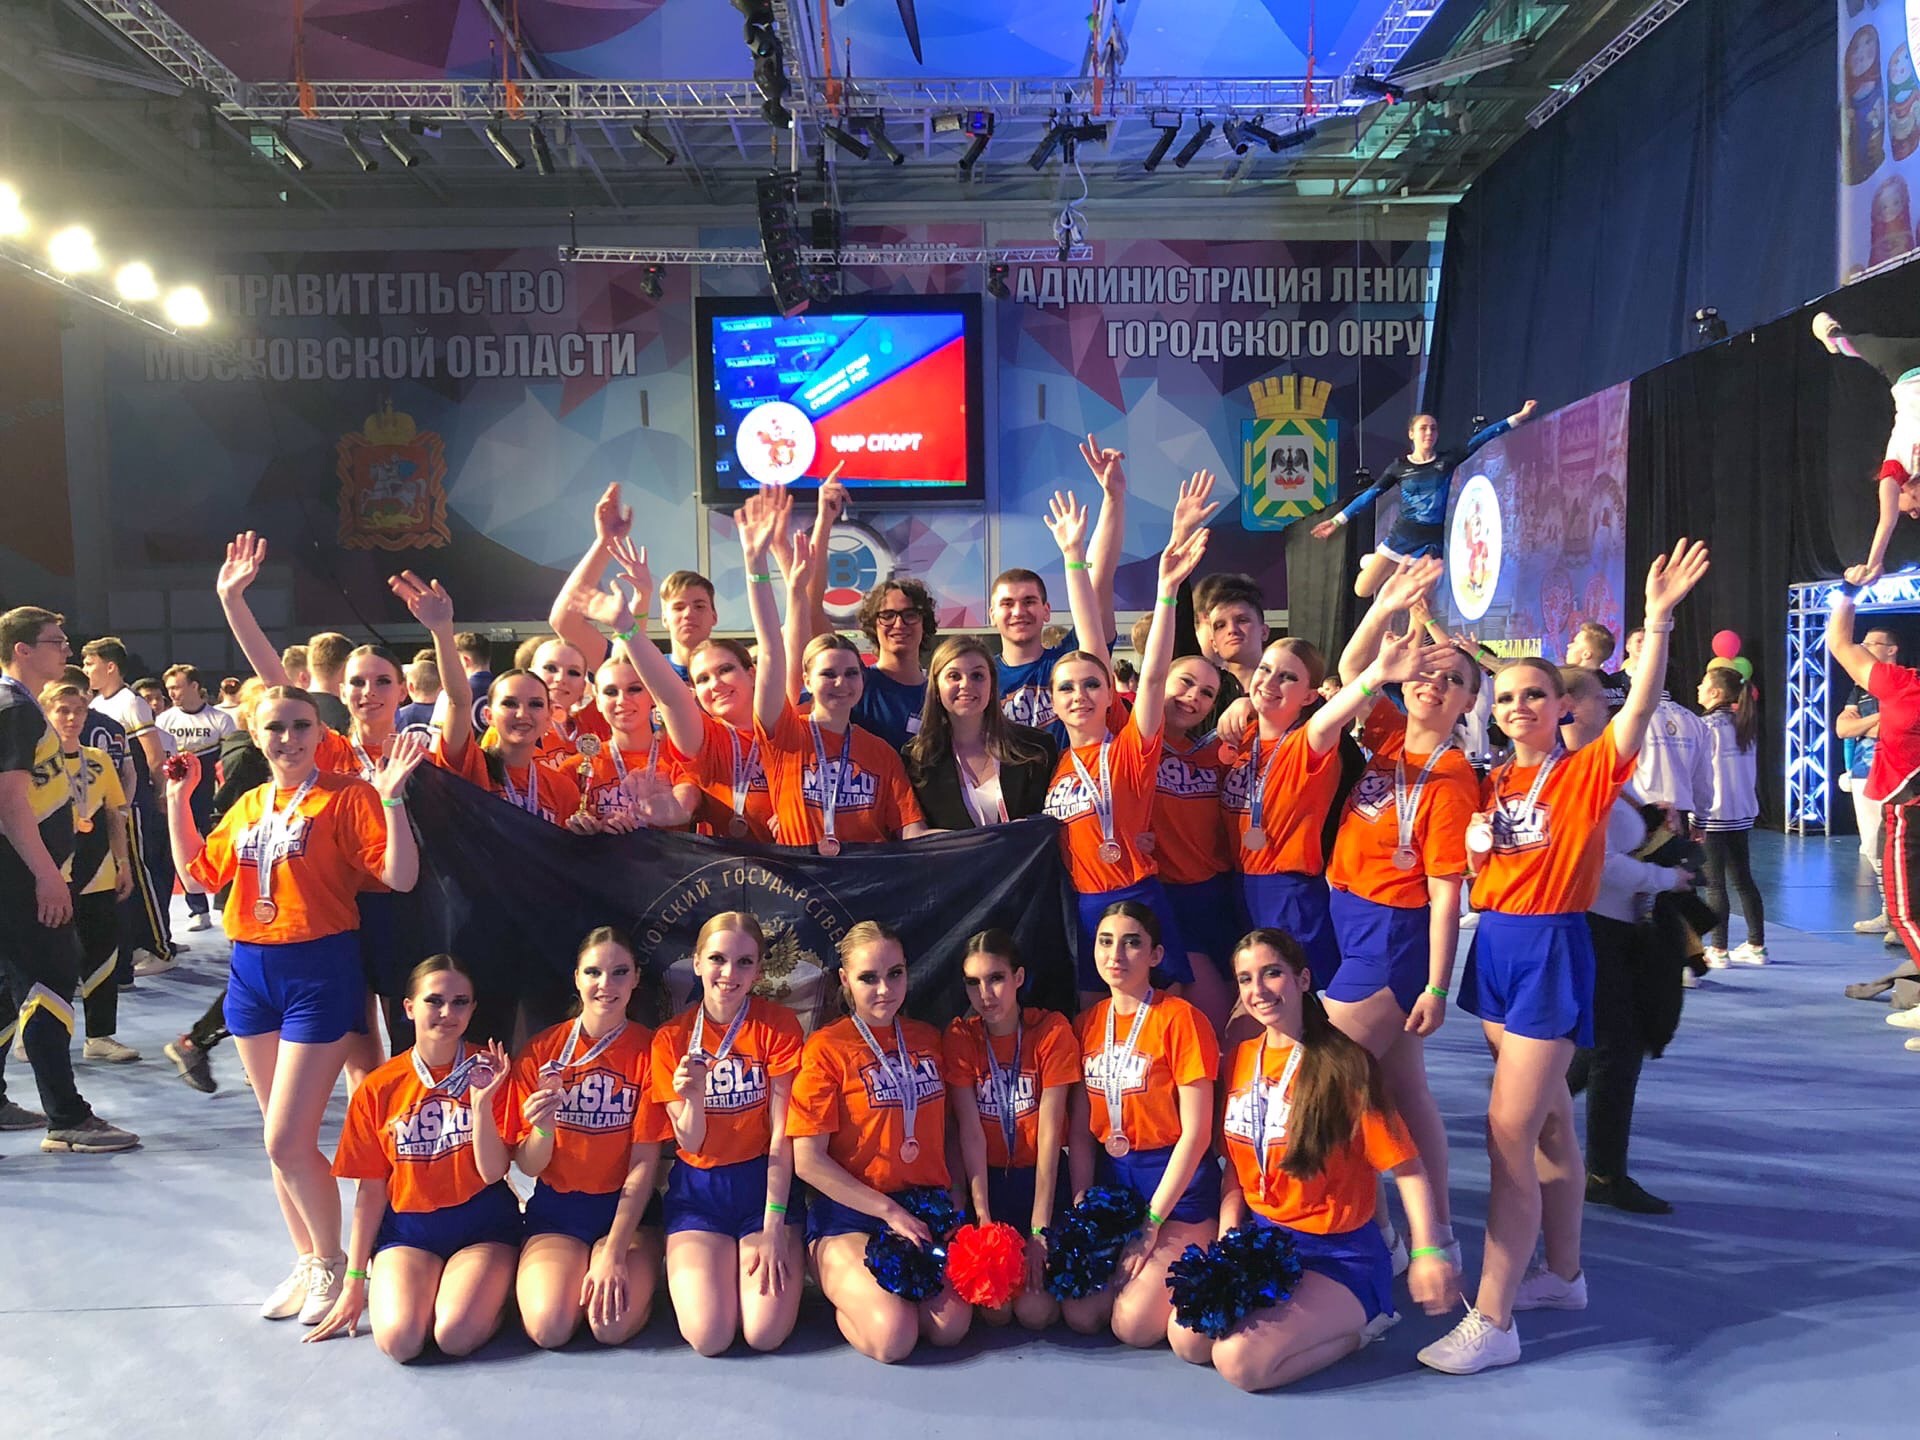 Бронза - наша! Команда МГЛУ завоевала бронзовую медаль Всероссийских студенческих соревнований по чирлидингу